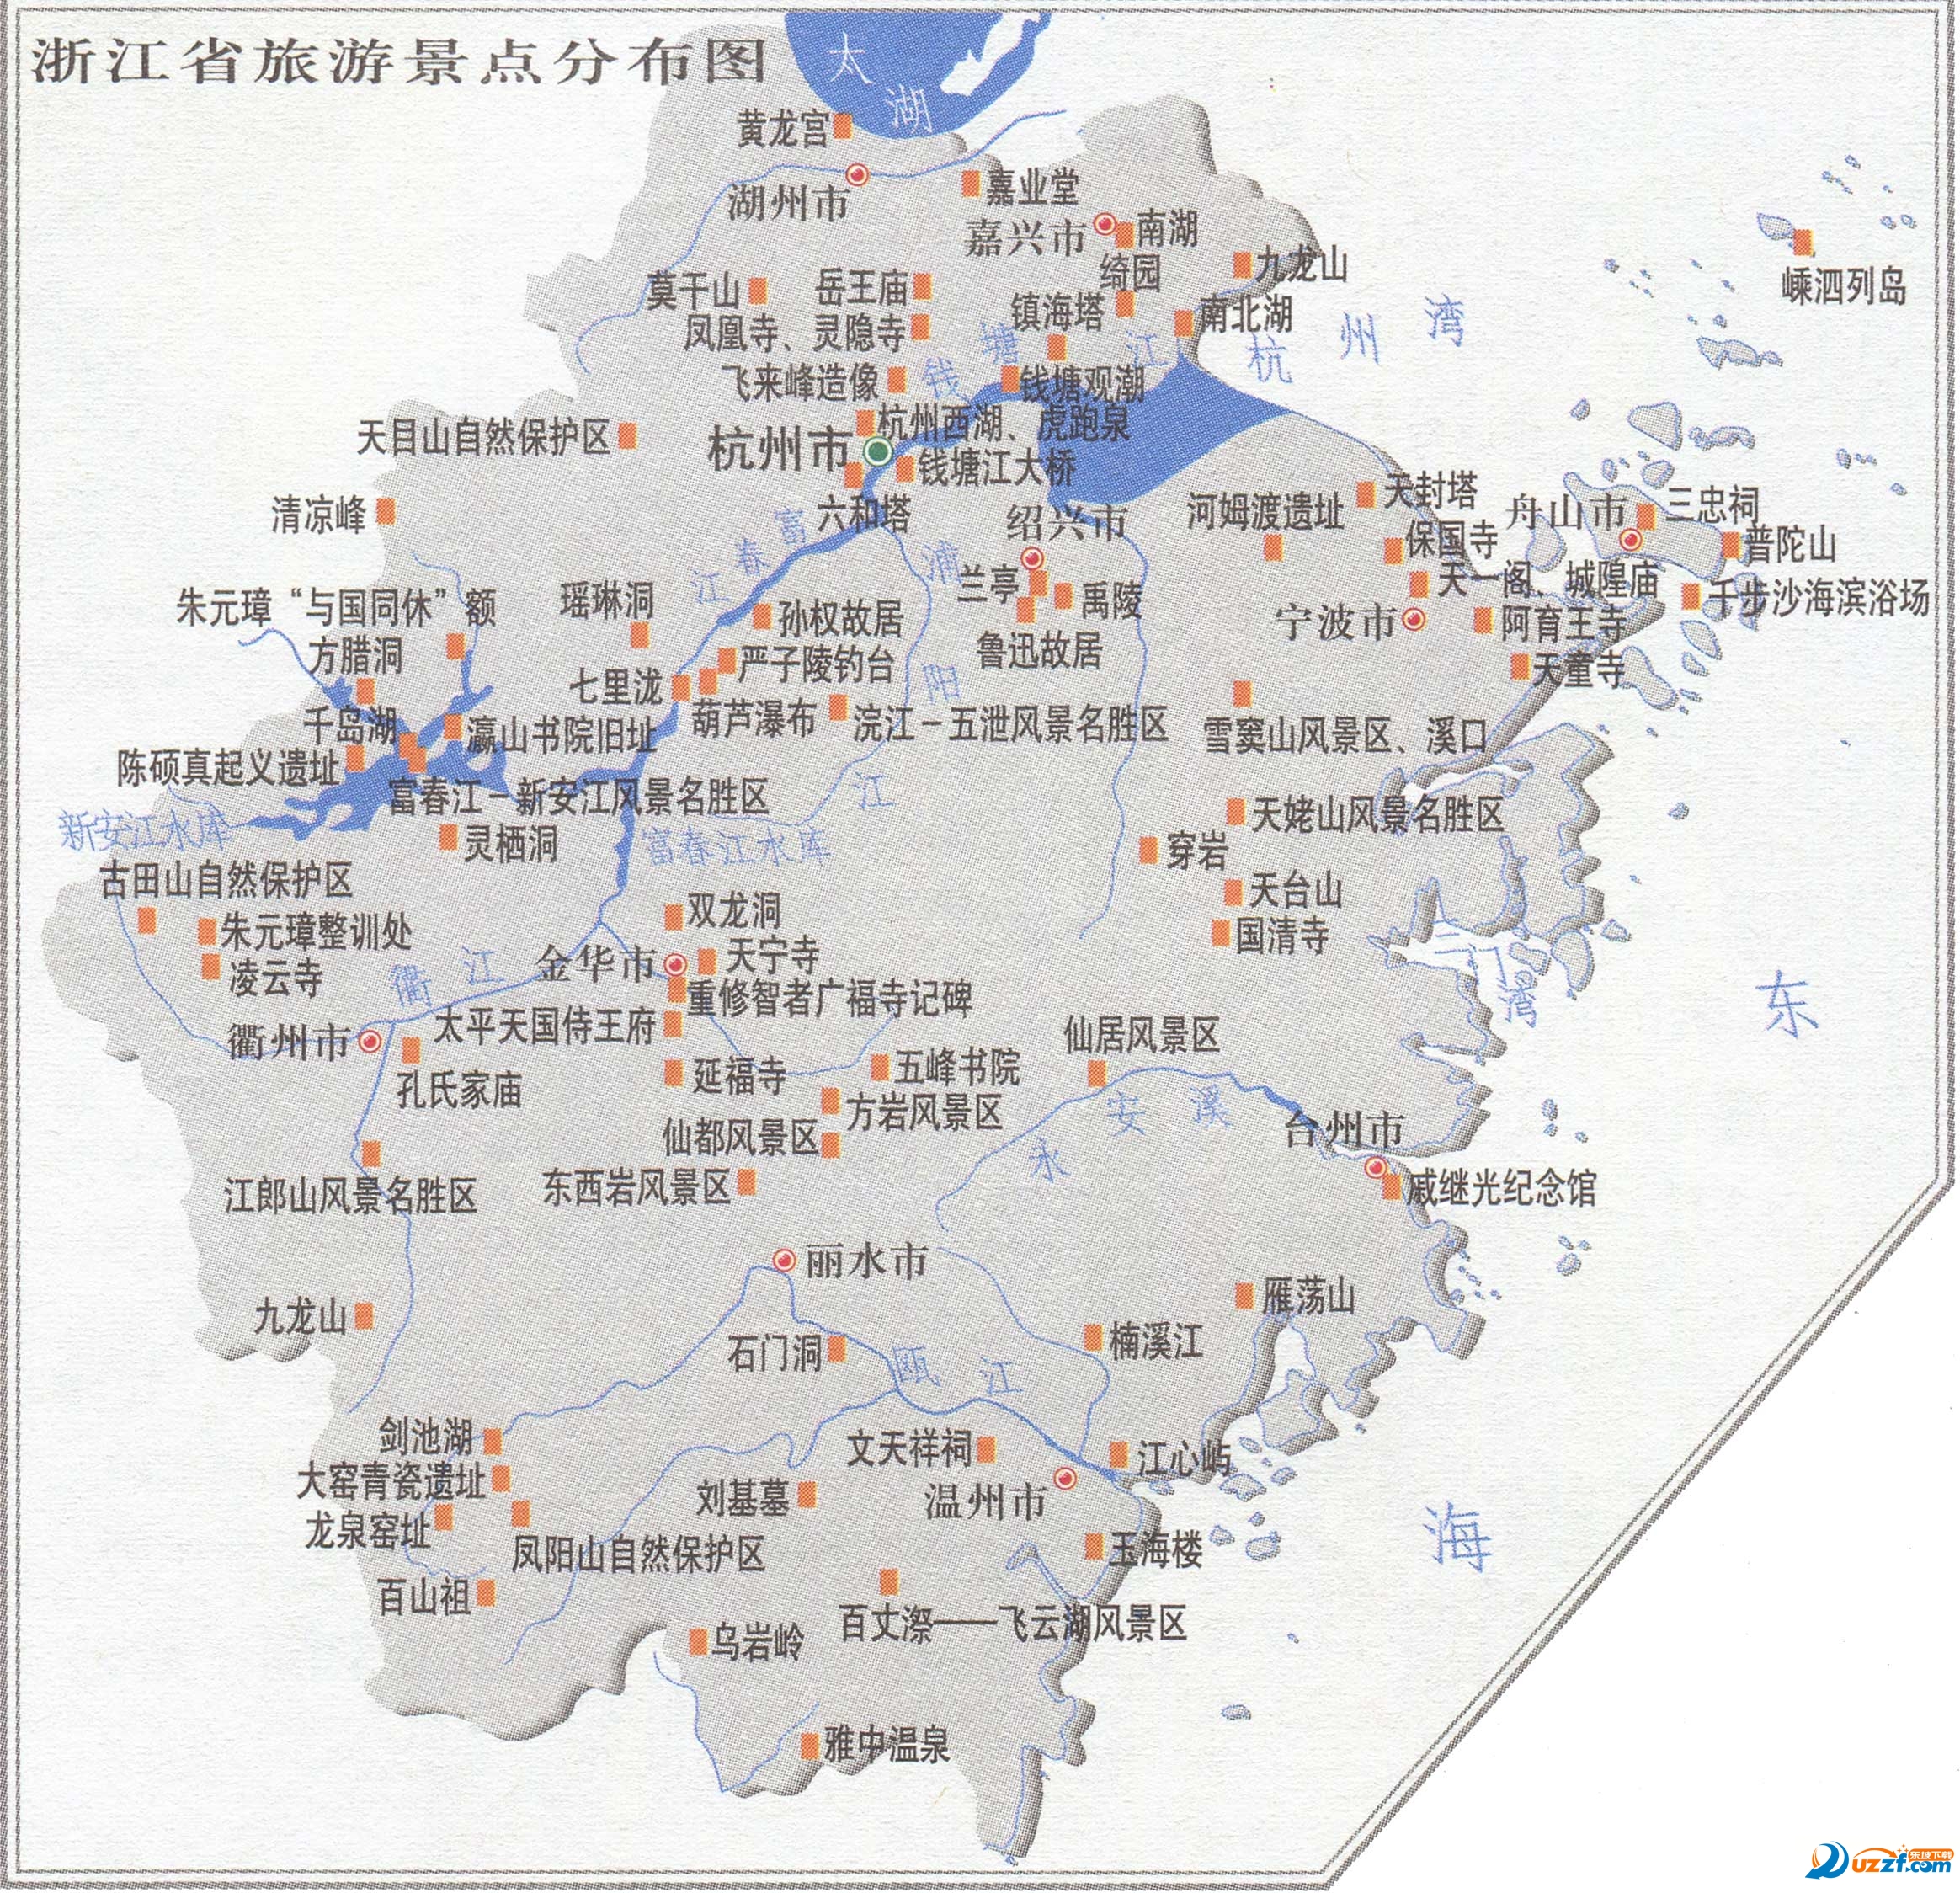 江苏浙江旅游地图 截图